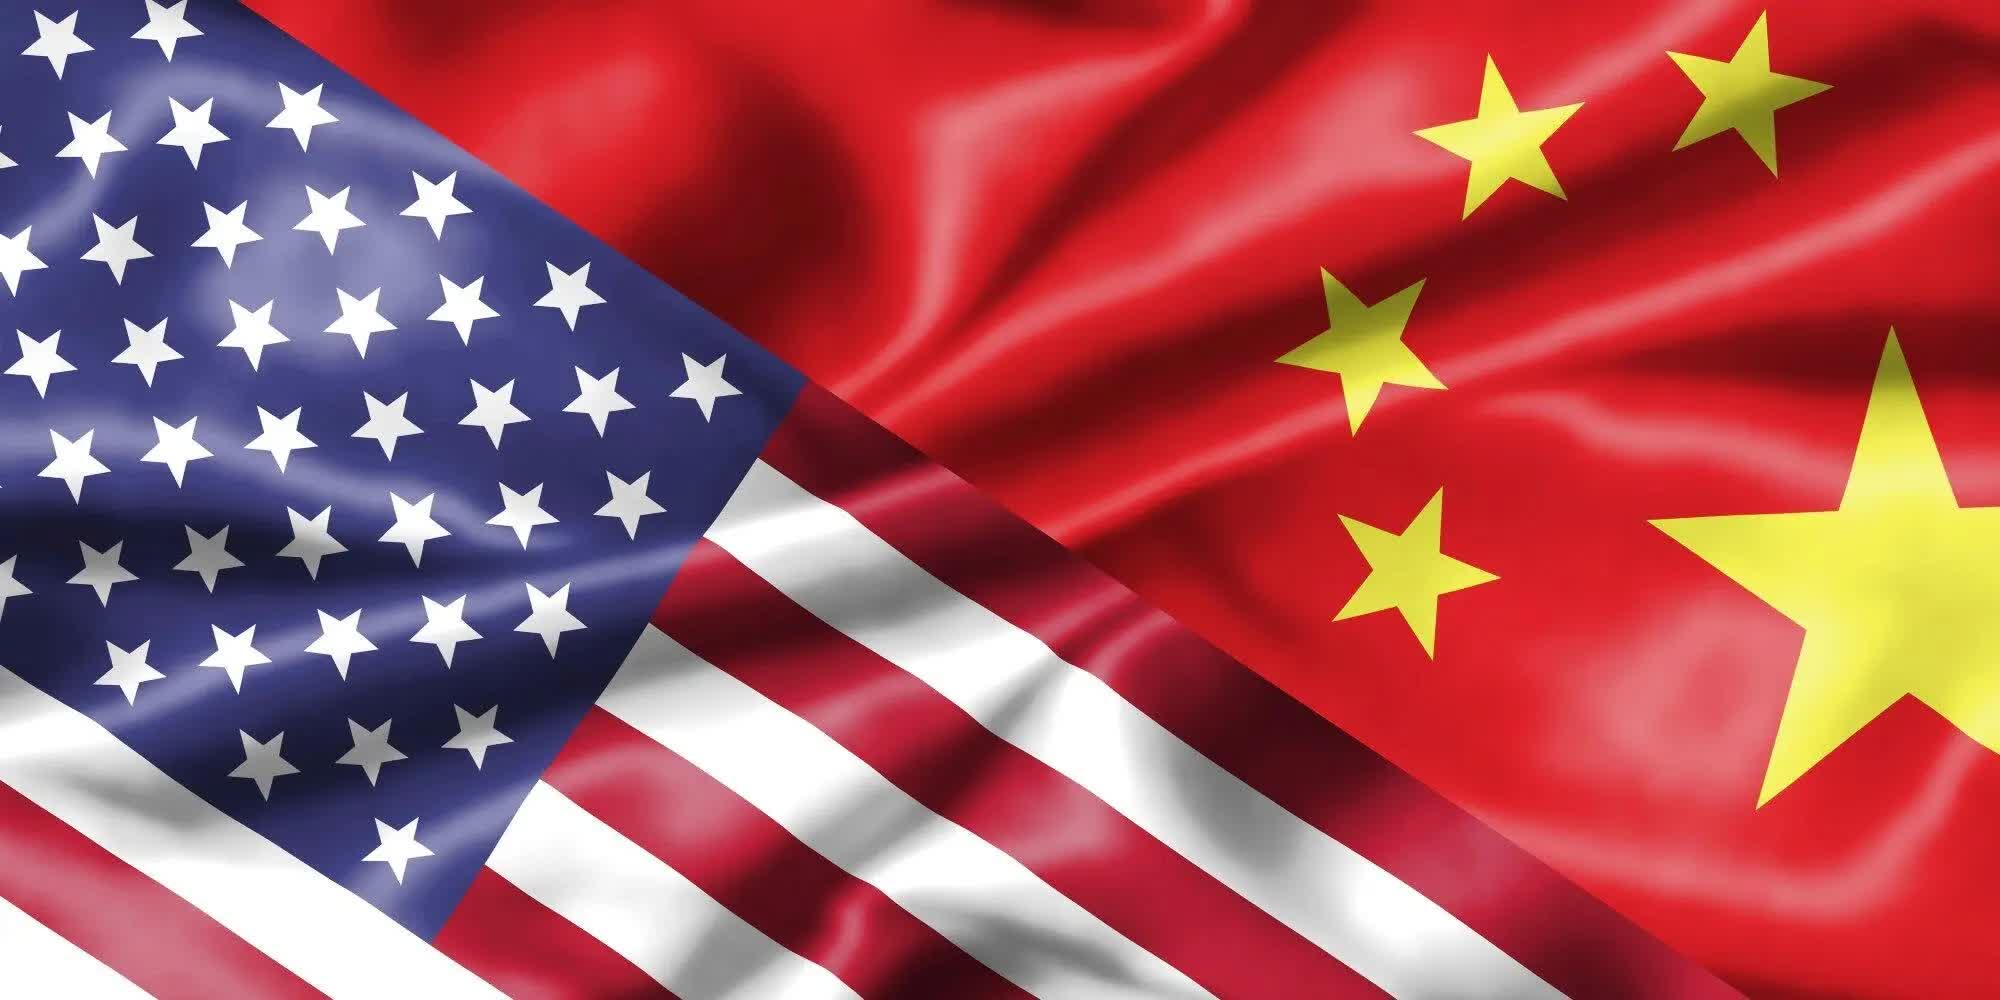 Microsoft emite una advertencia sobre el uso de IA generativa por parte de China para perturbar las elecciones estadounidenses